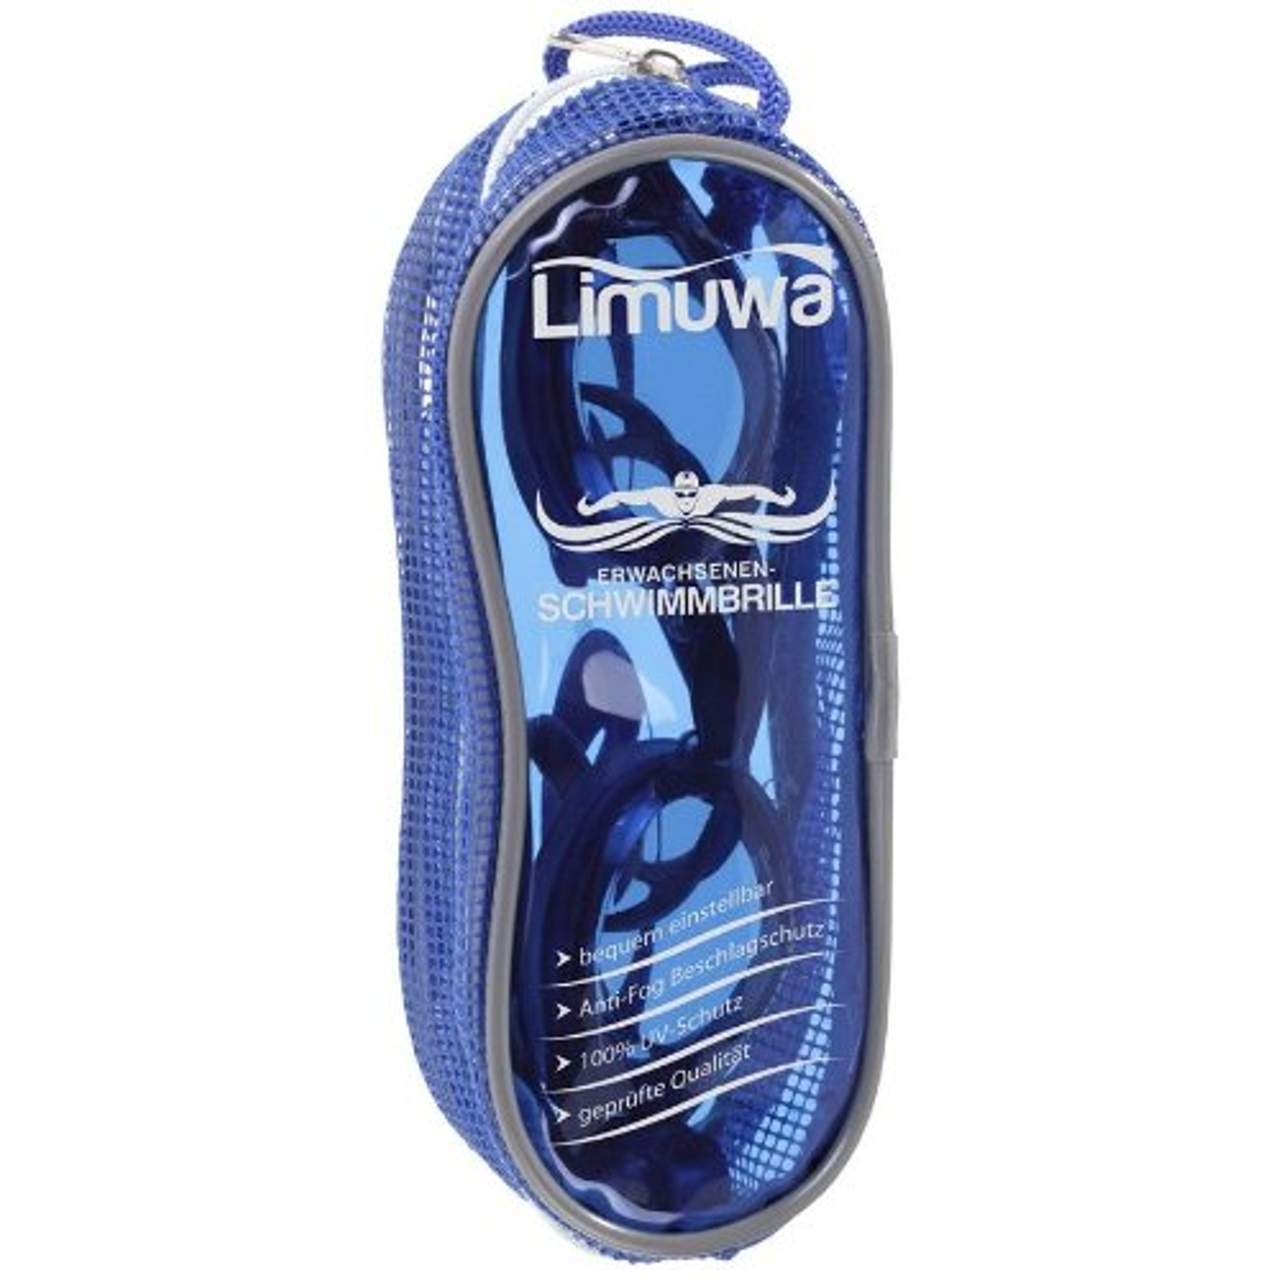 Limuwa Schwimmbrille Deluxe mit Antibeschlag- und 100%-UV-Schutz